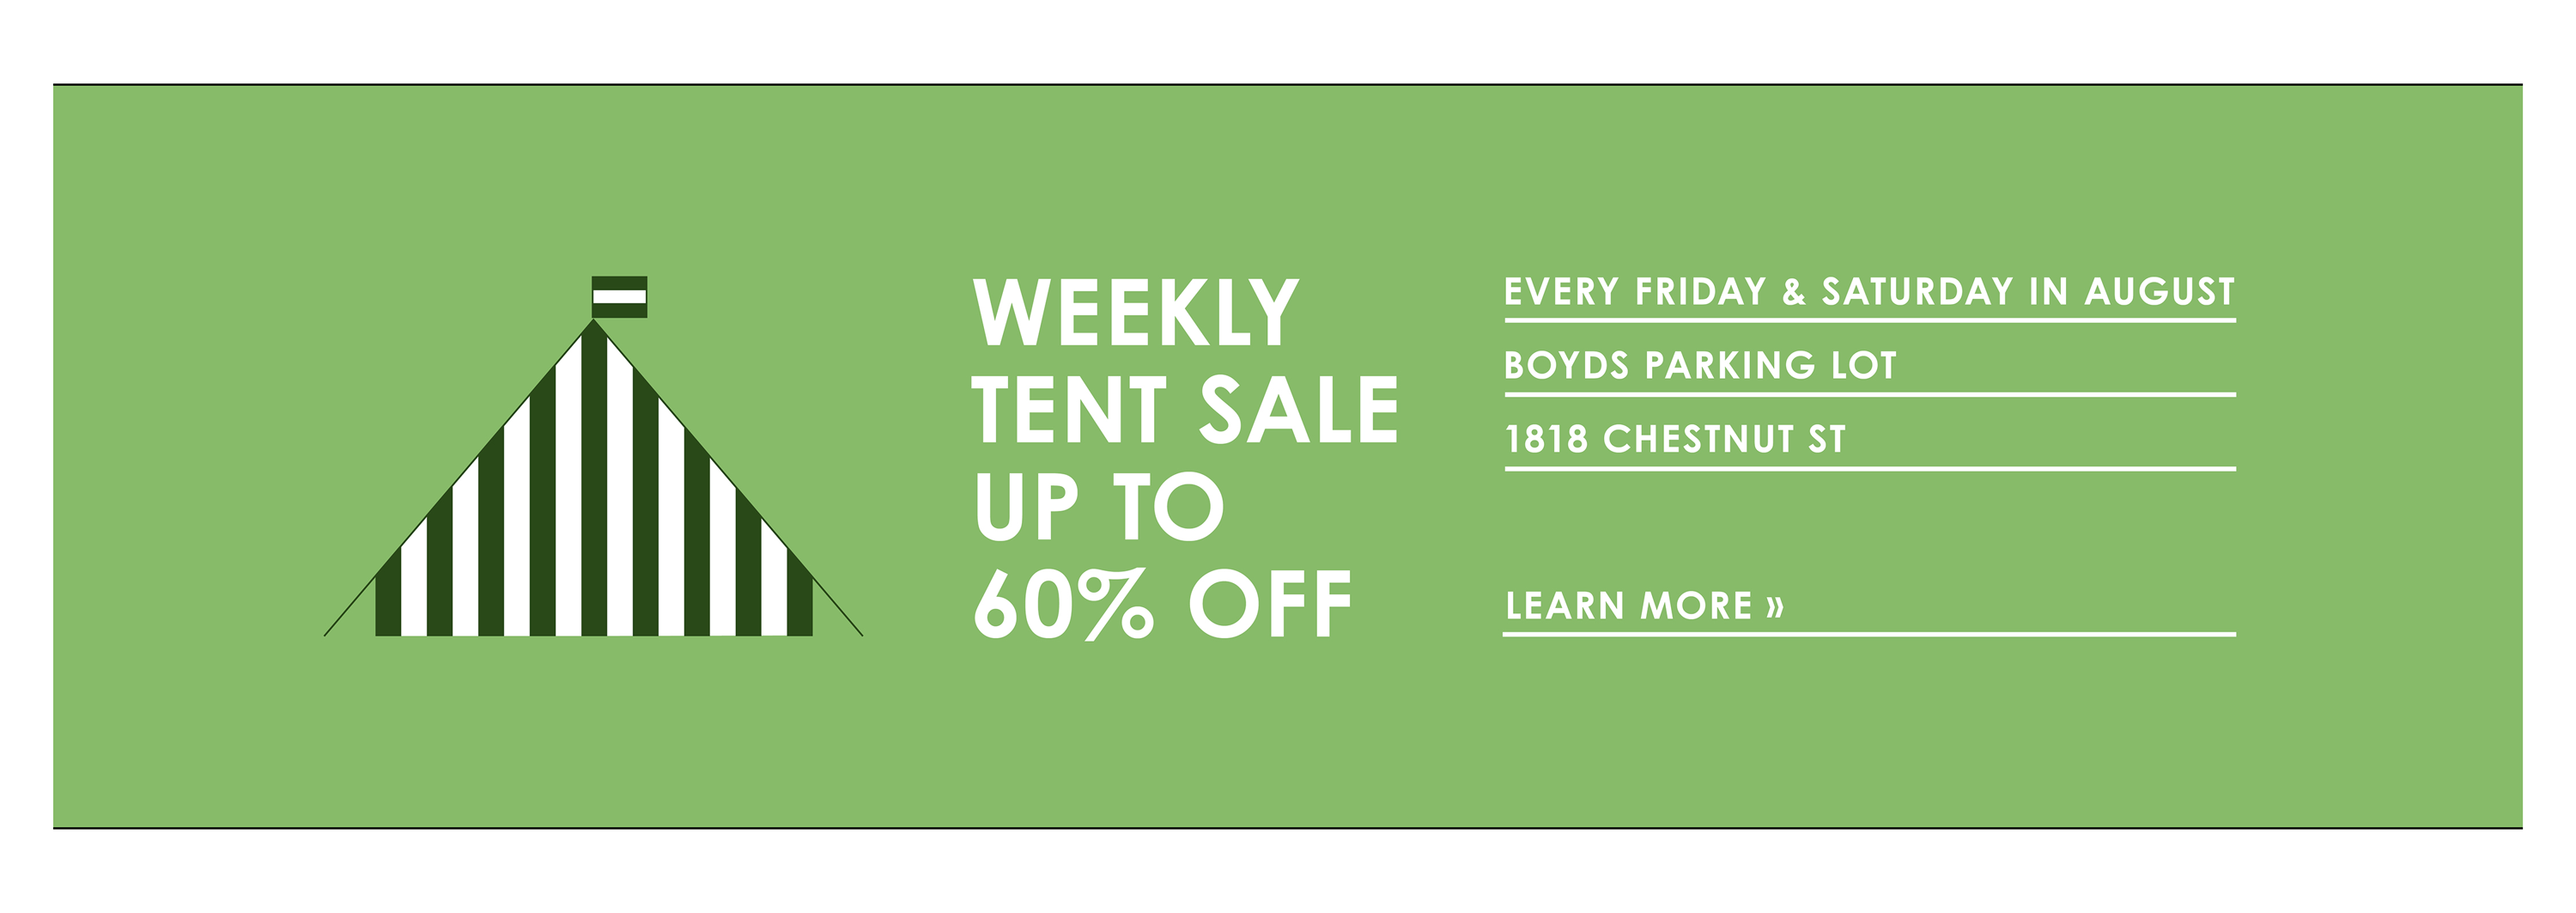 Weekly Tent Sales